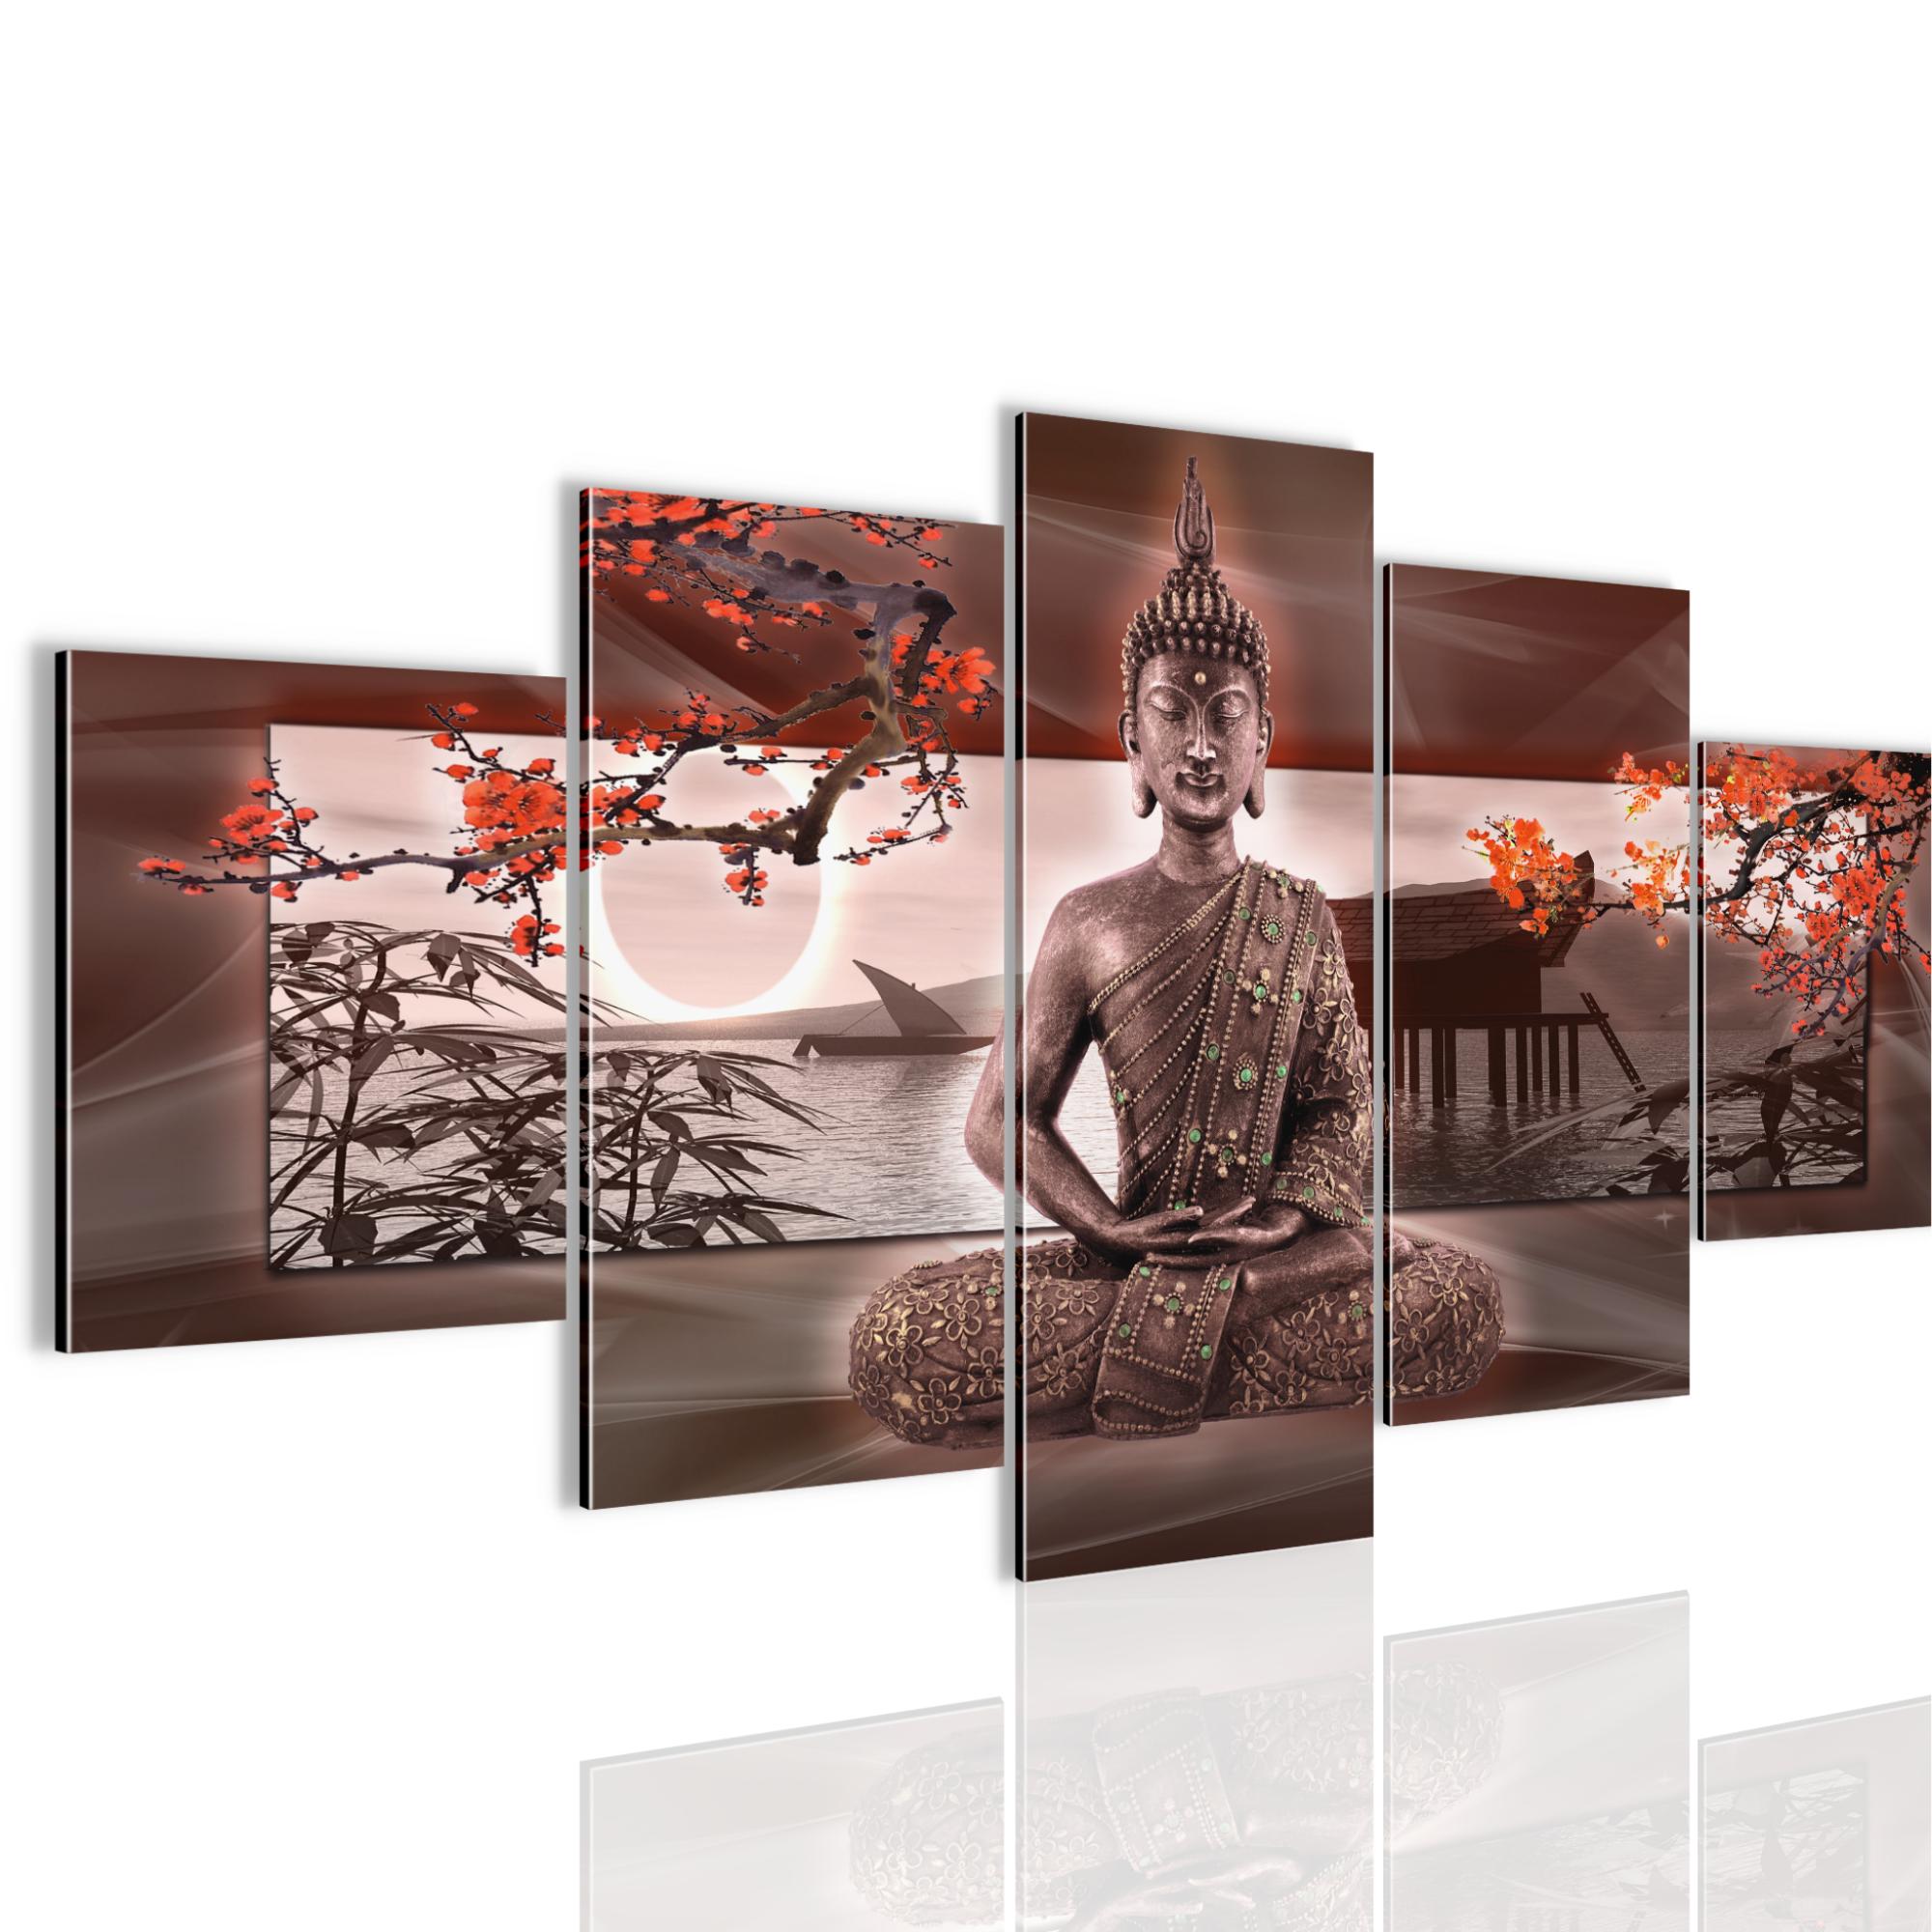 DESIGNBILDER-WANDBILD Relax Buddha Bild Feng Shui Wohnzimmer Kunst 180x110cm